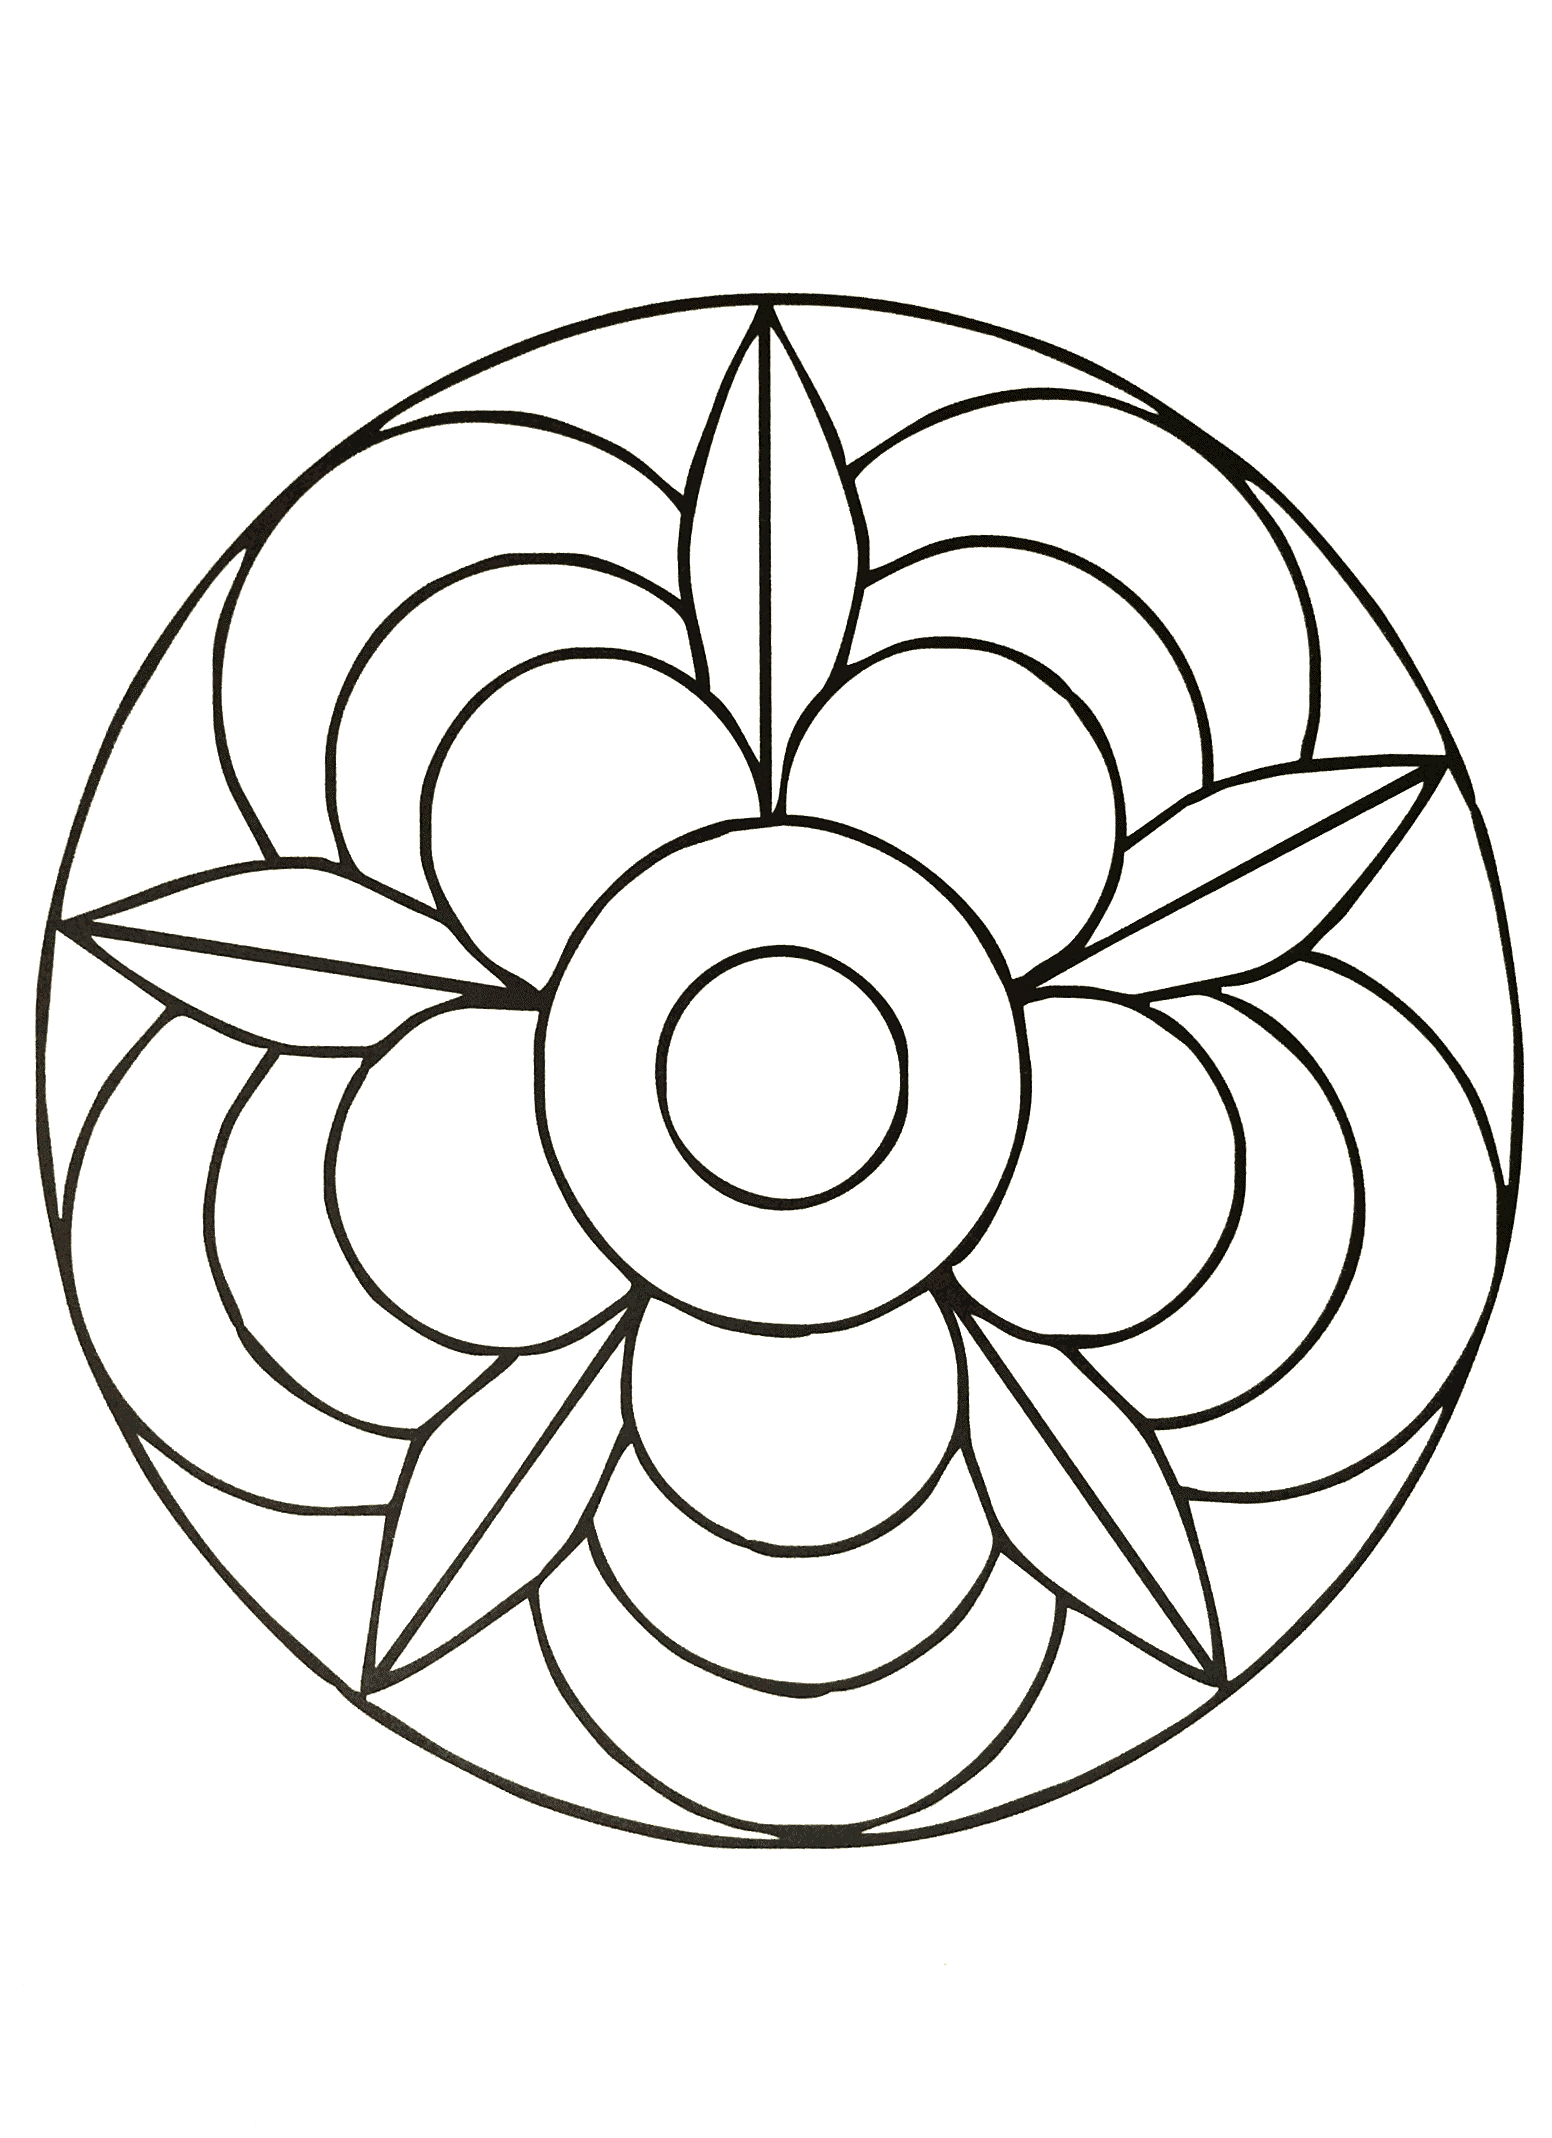 Wunderschönes Mandala, das eine sehr schöne Blume darstellt. Sehr einfach zum Ausmalen.